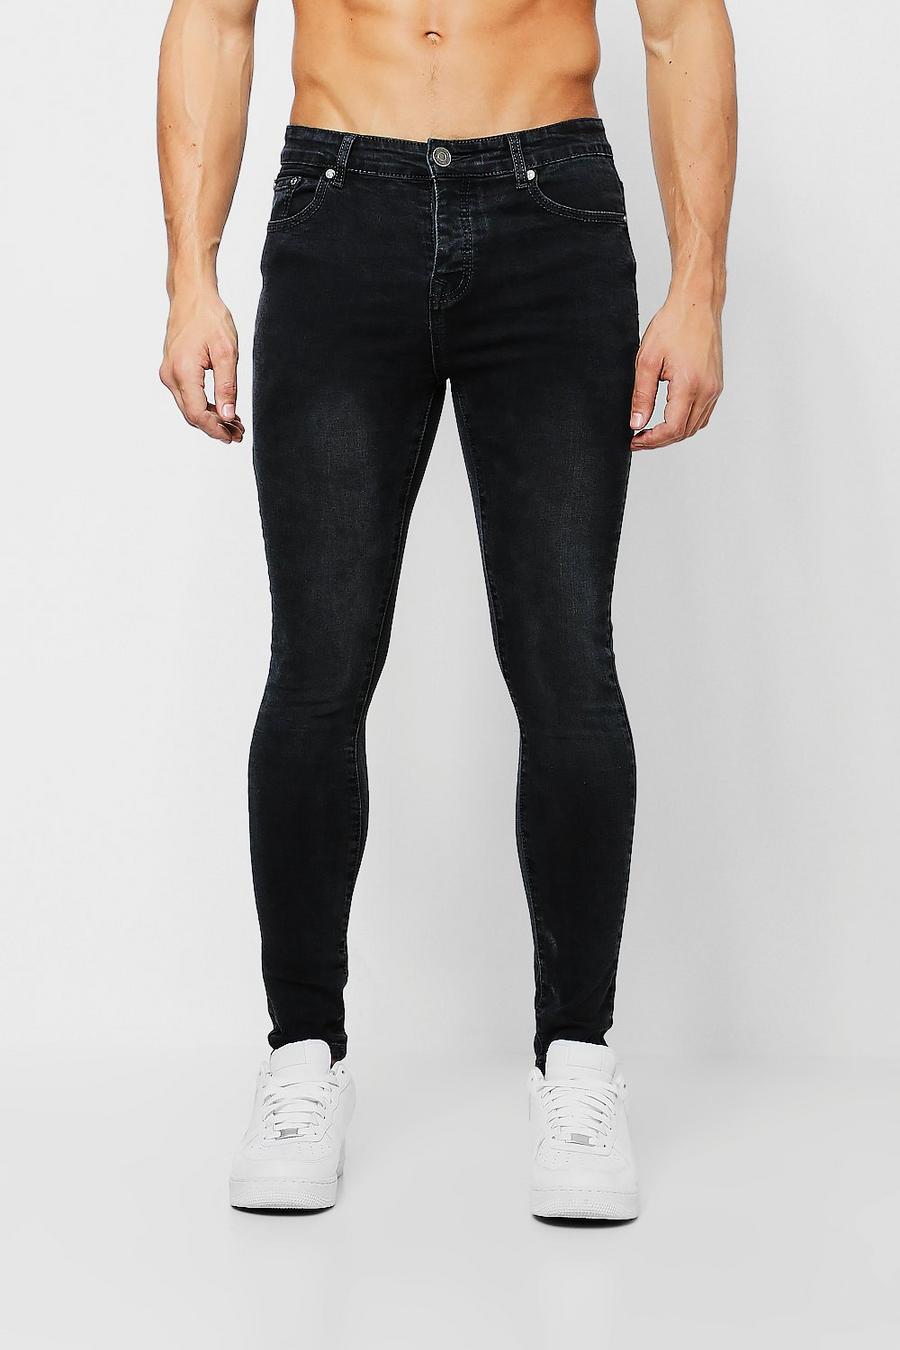 Spray On Skinny Jeans in schwarzer Waschung, Verwaschenes schwarz image number 1